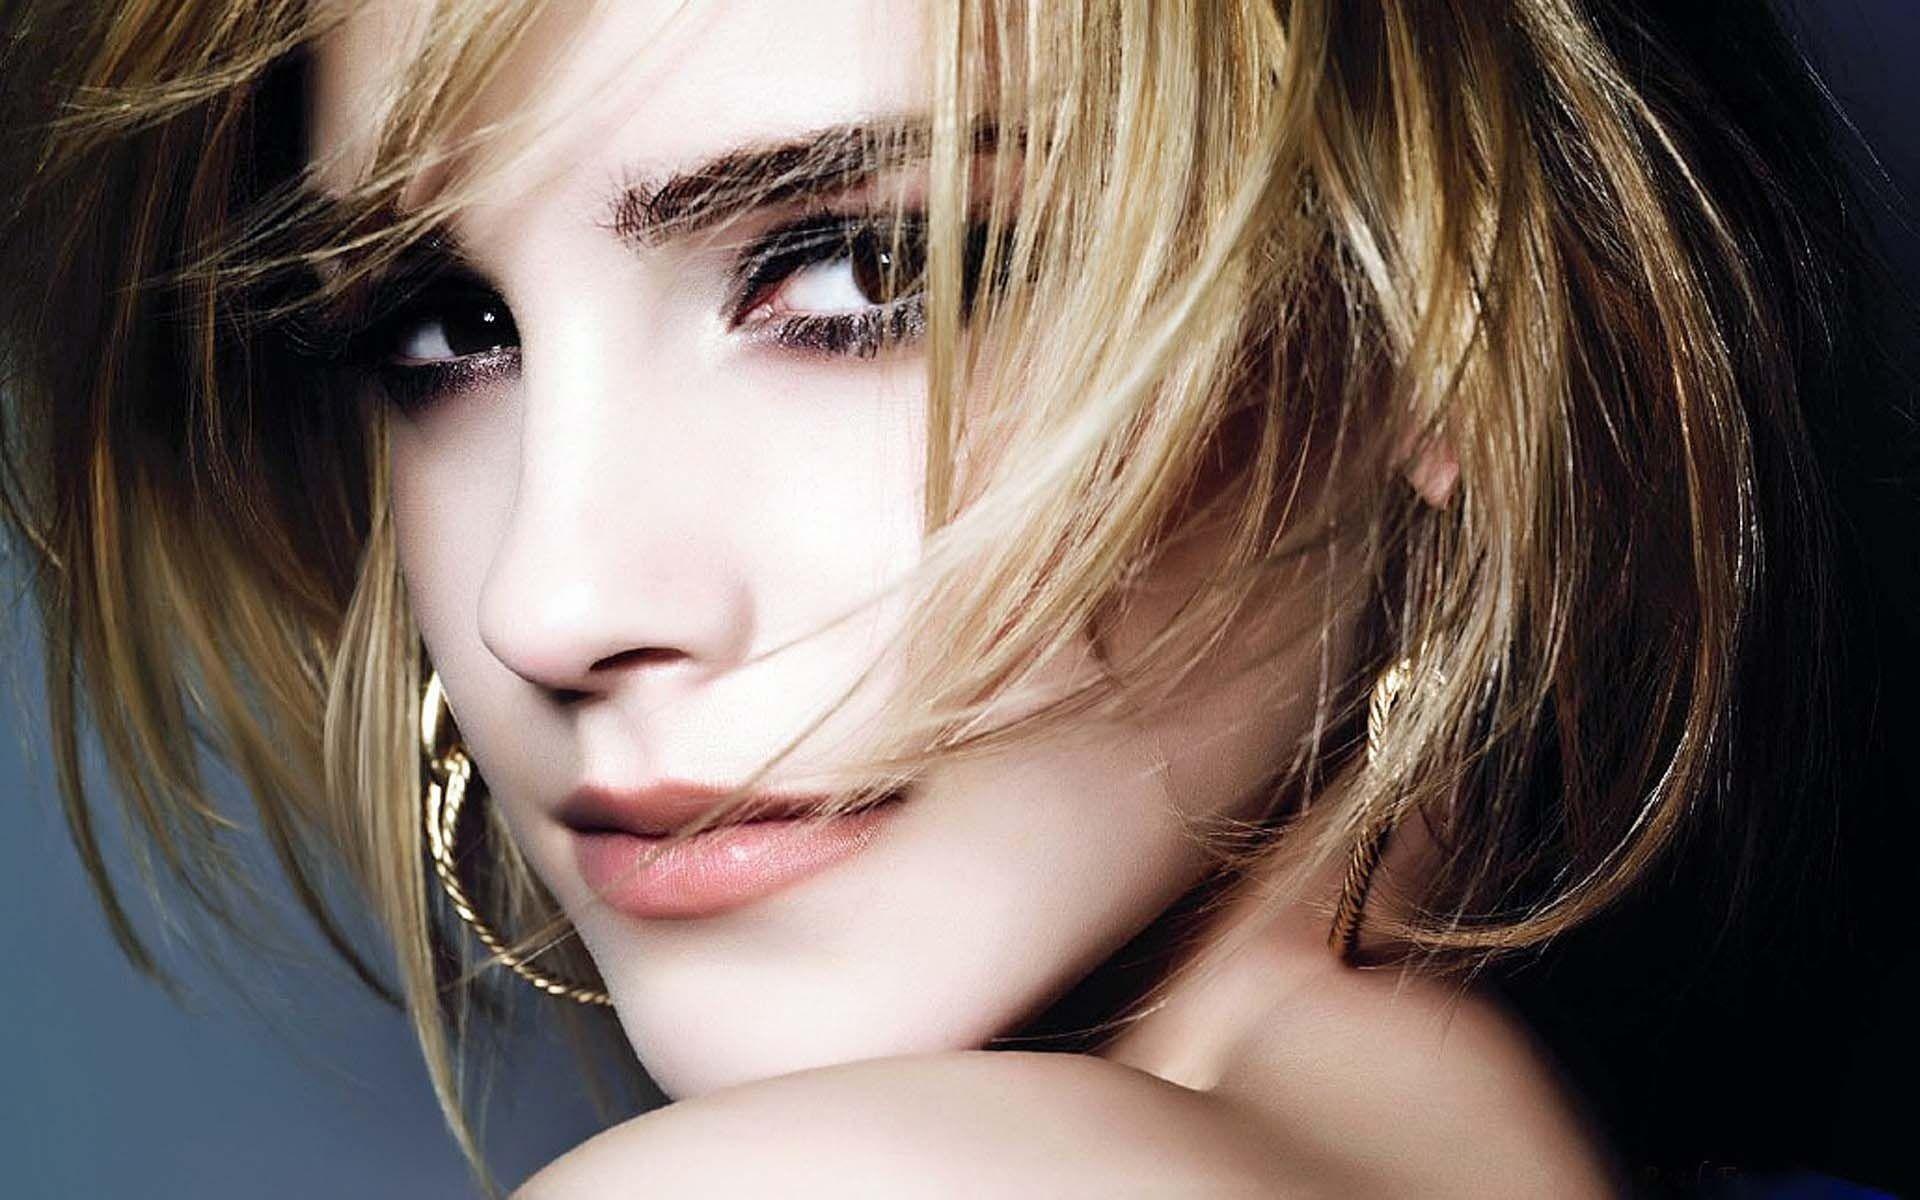 Emma Watson, Top wallpapers, Emma Watson images, Fan-favorite backgrounds, 1920x1200 HD Desktop